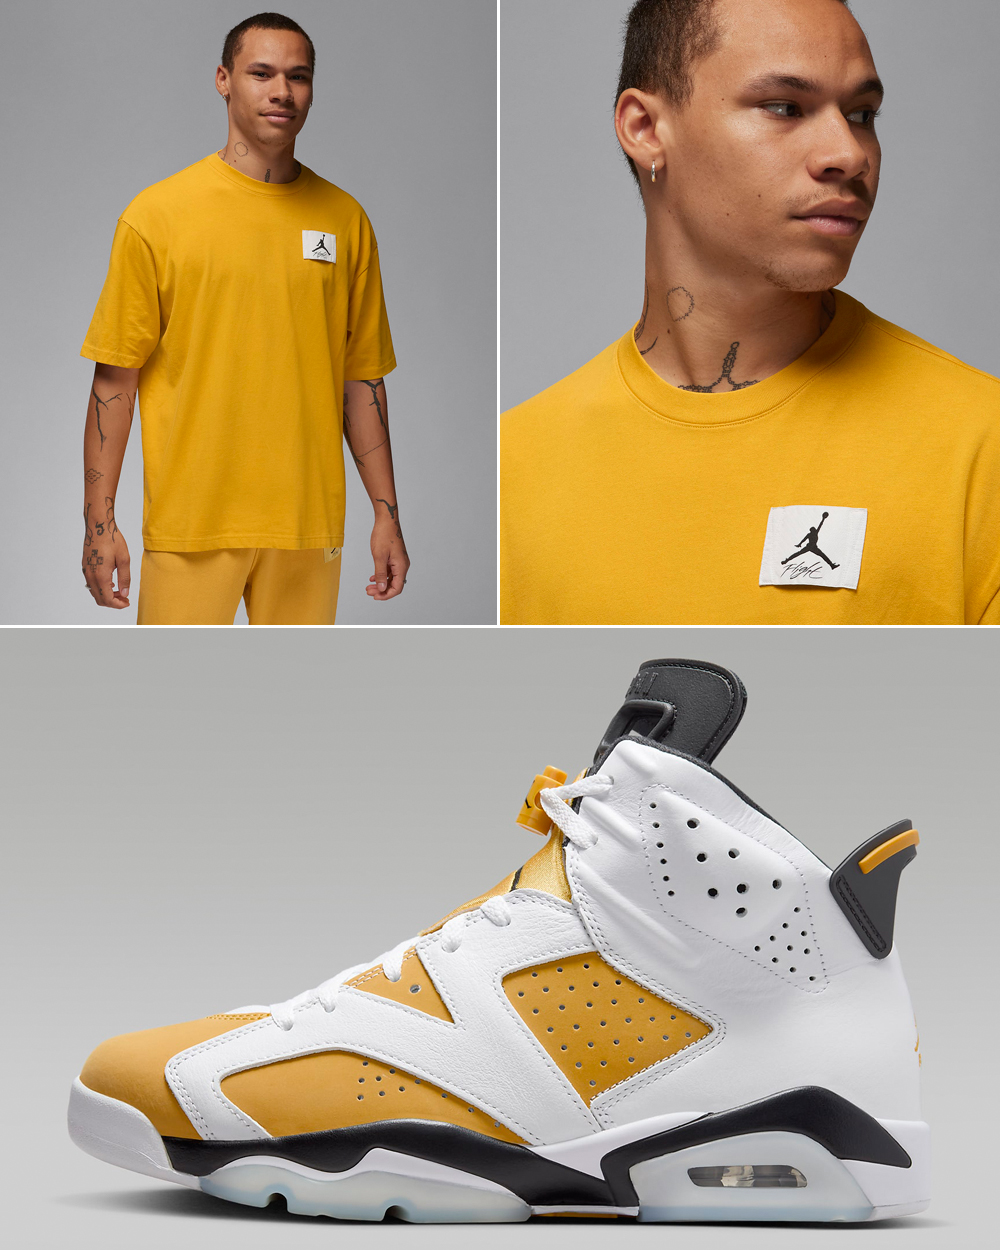 Air-Jordan-6-Yellow-Ochre-T-Shirt-Matching-Outfit